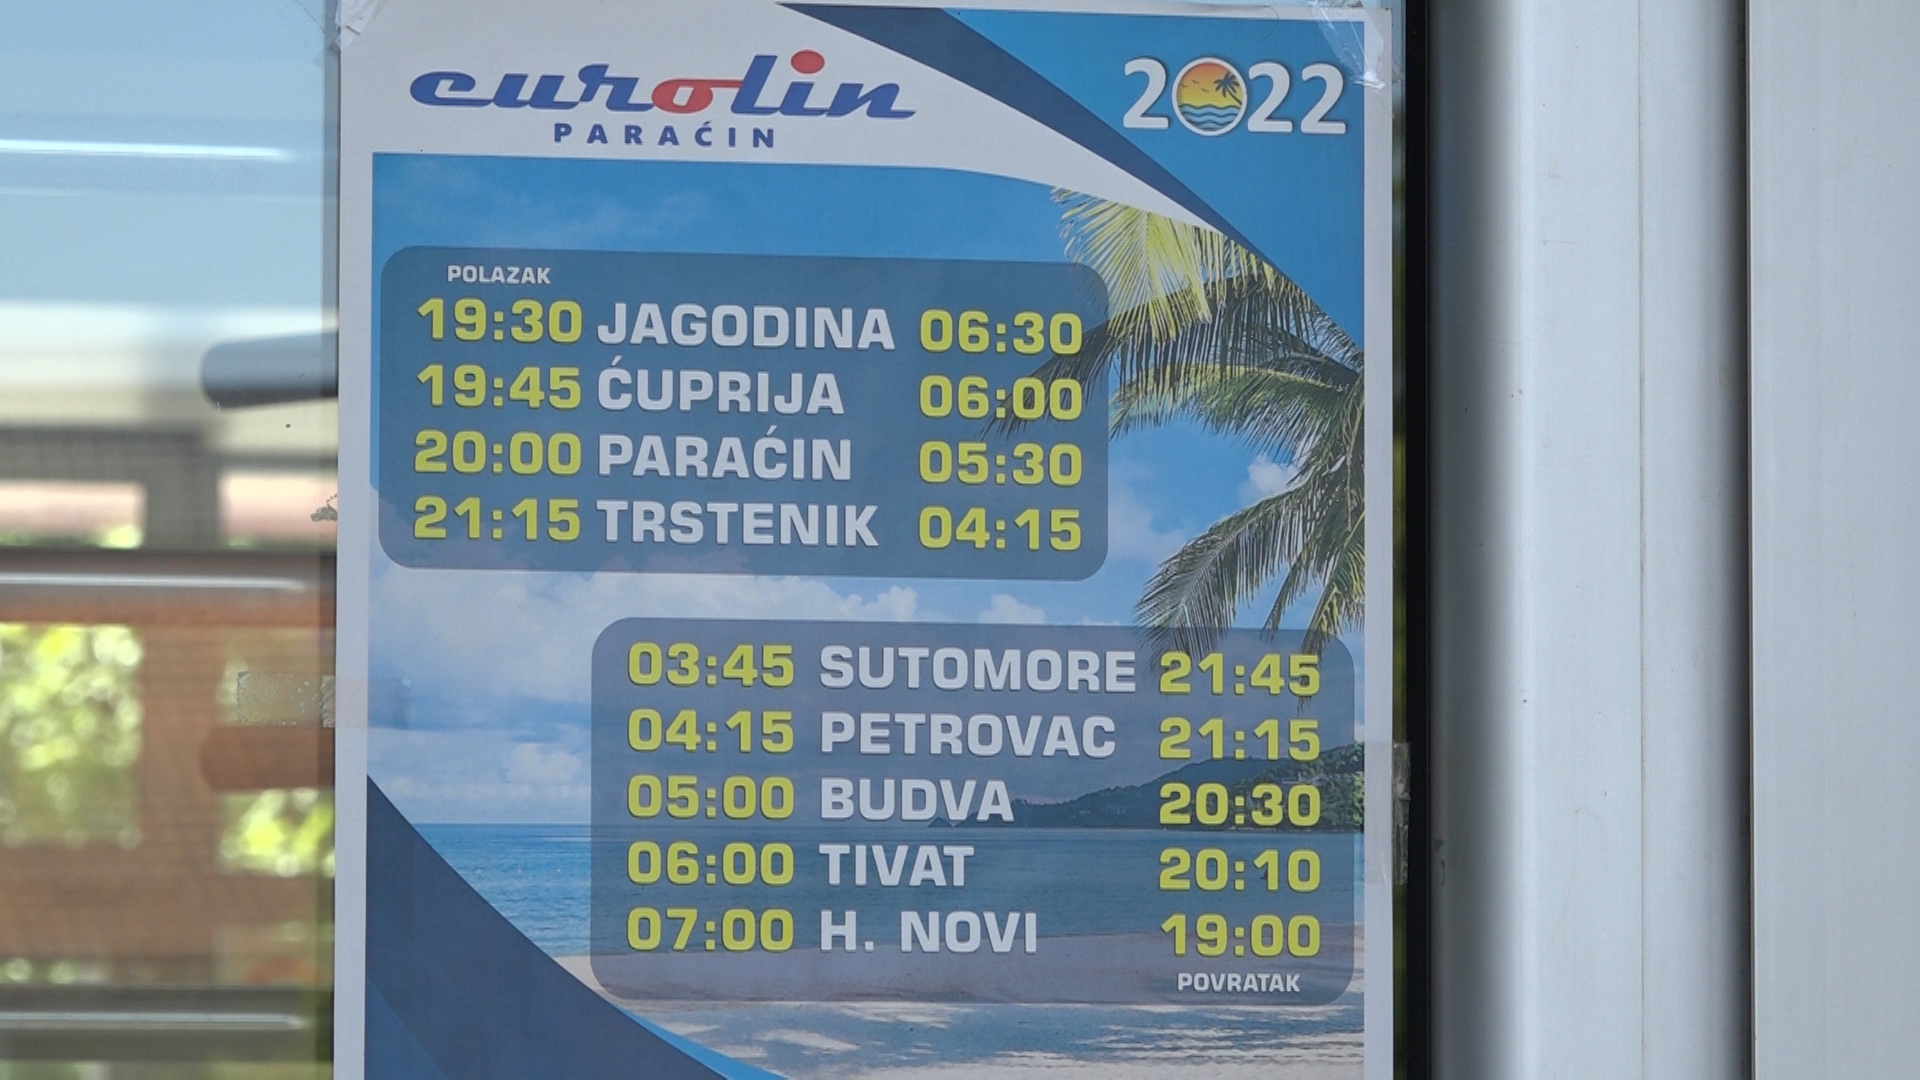 Uslovi za putovanje u autobusima kompanije Eurolin